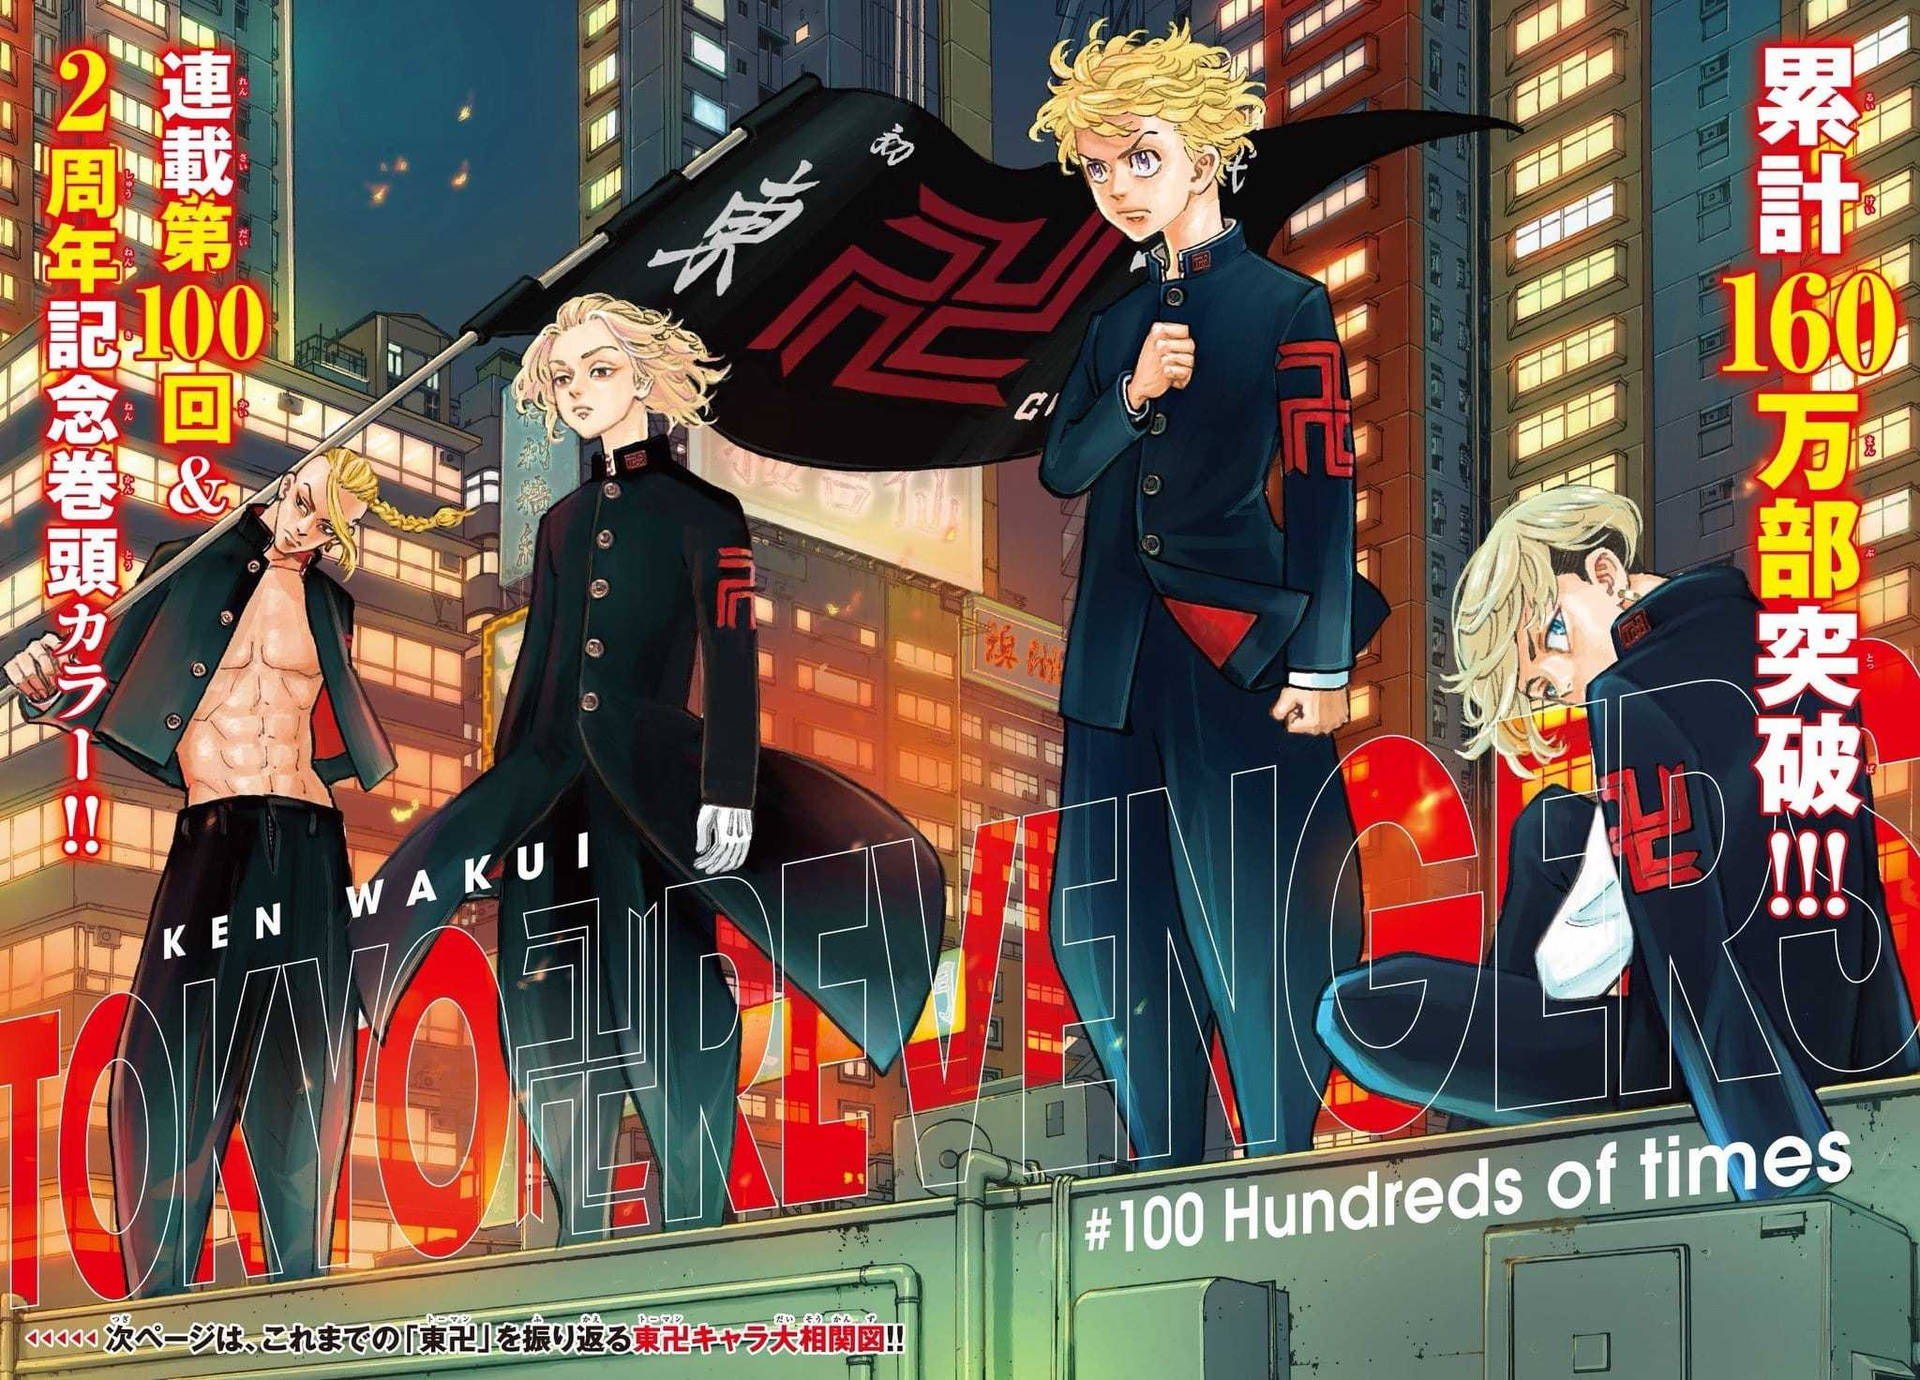 Tokyo Revengers Manga Poster With Japanese Manji Flag Wallpaper